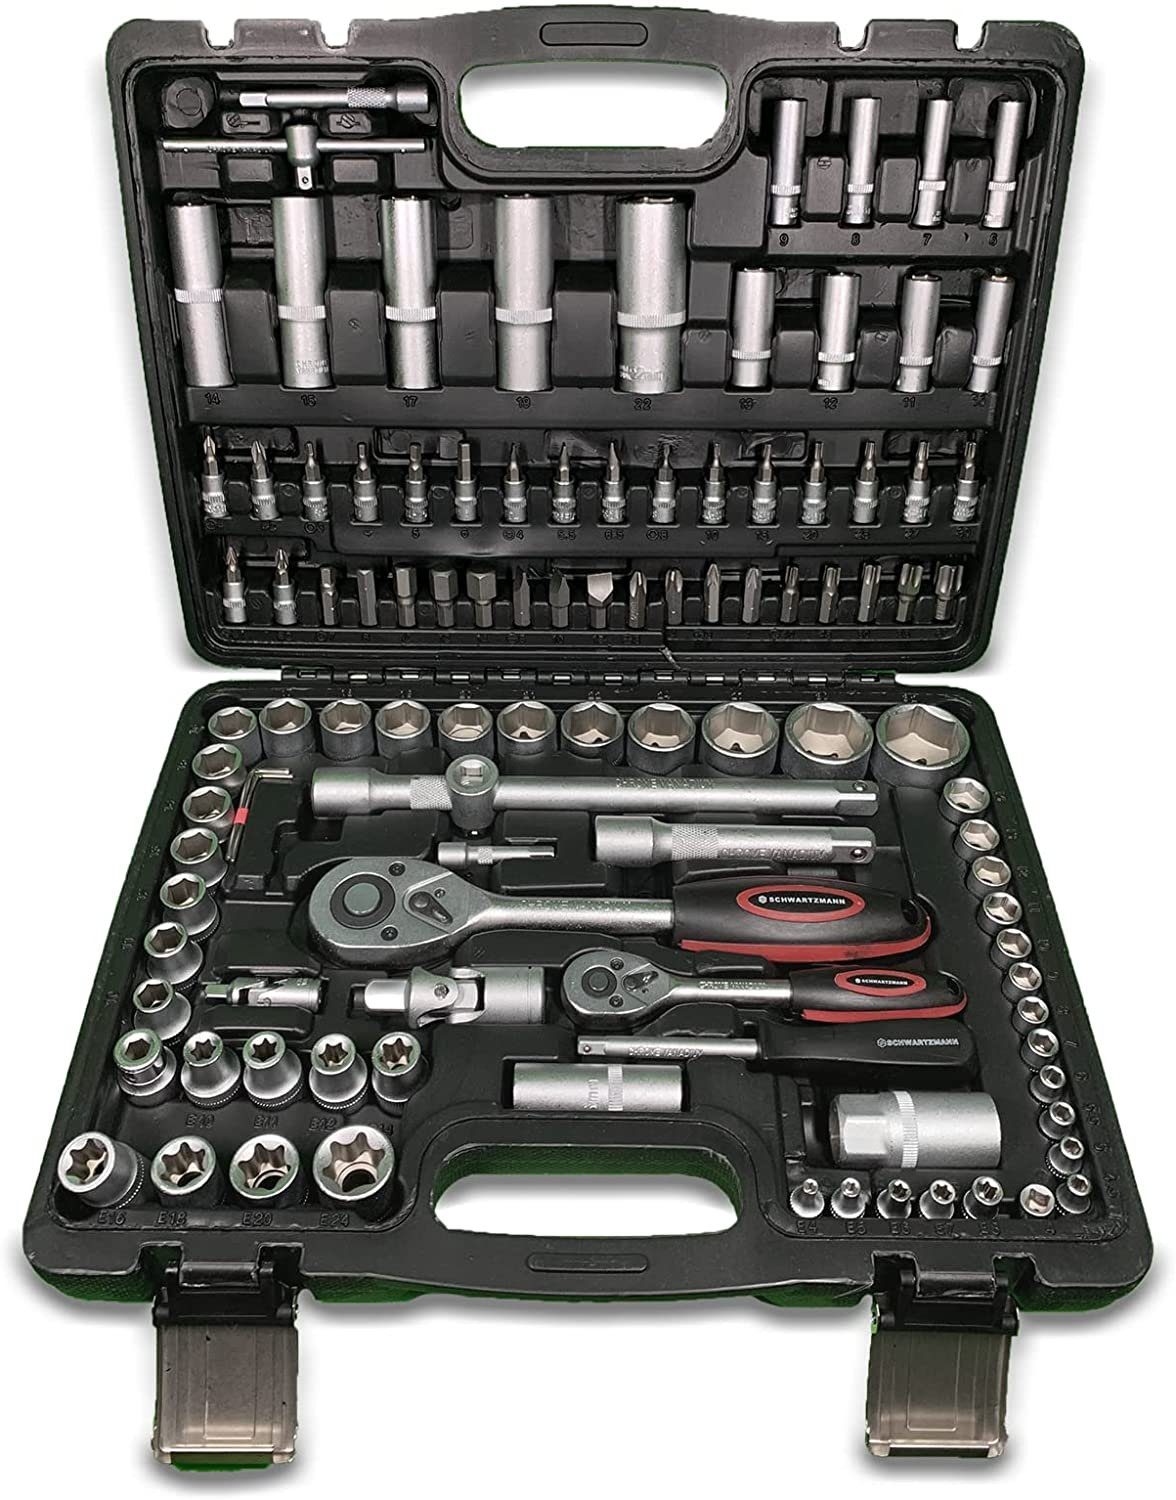 Markenwarenshop-Style Werkzeugkoffer mit 108 Teile Werkzeugset Werkzeugset Schwartzmann